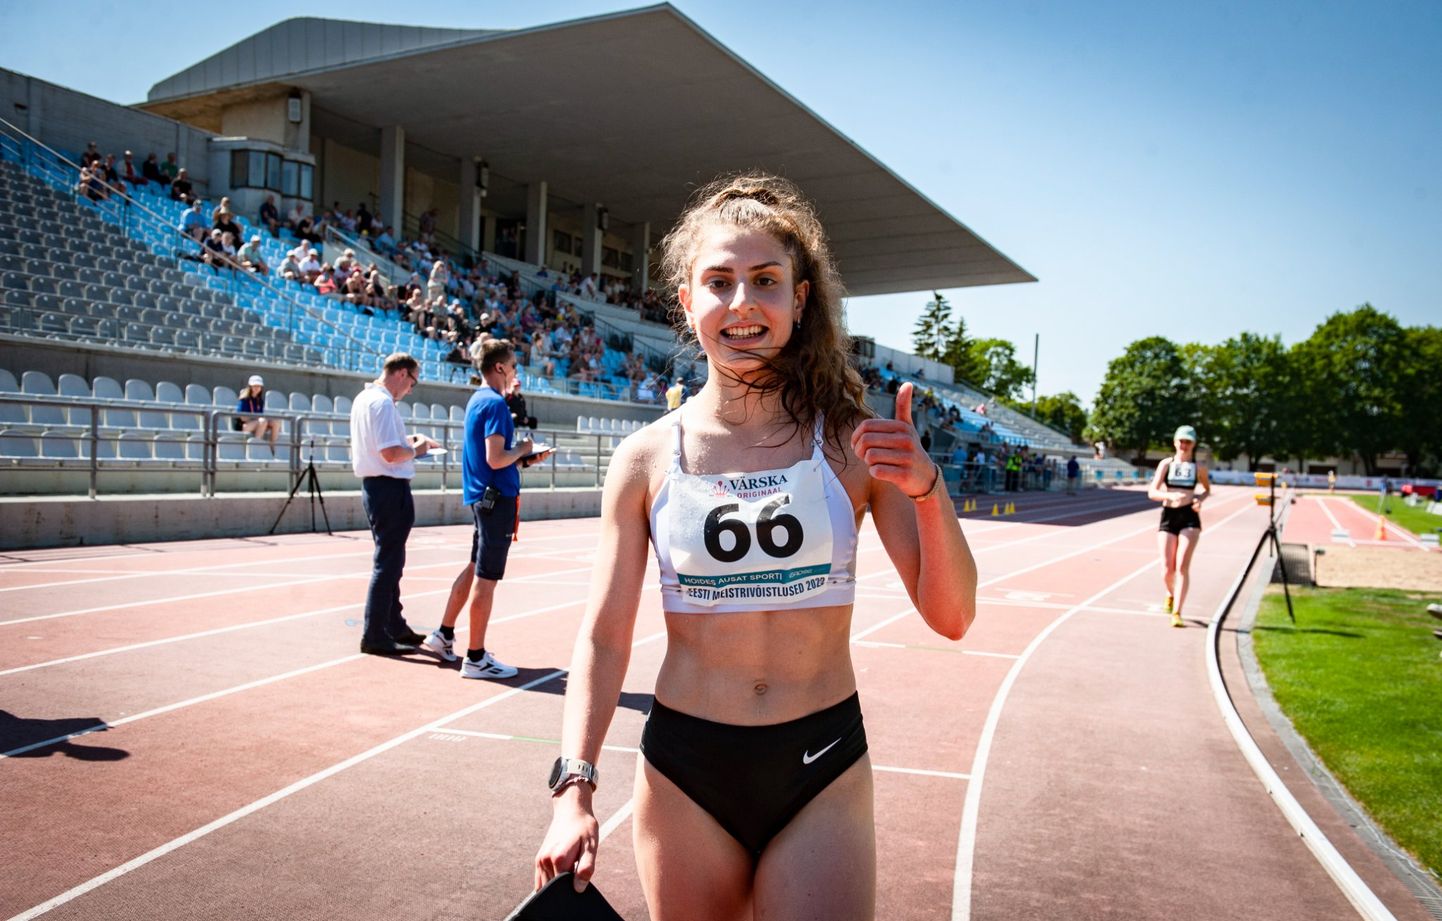 Екатерине Миротворцевой также принадлежит рекорд Эстонии в ходьбе на 10000 метров, который она установила в конце июня на чемпионате Эстонии, где намного опередила всех ходоков-мужчин.